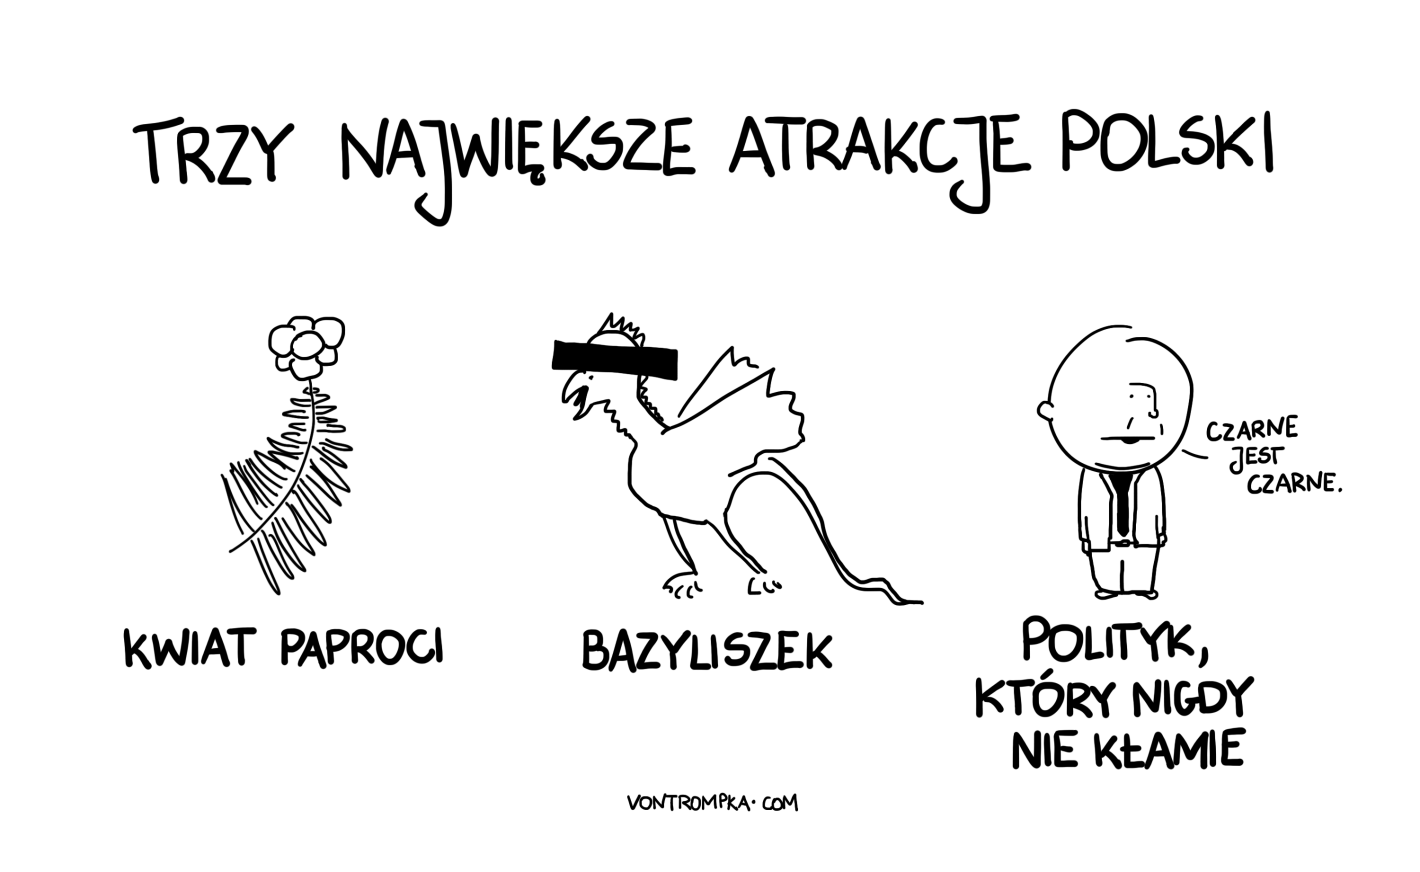 trzy największe atrakcje Polski kwiat paproci, bazyliszek, polityk, który nigdy nie kłamie czarne jest czarne